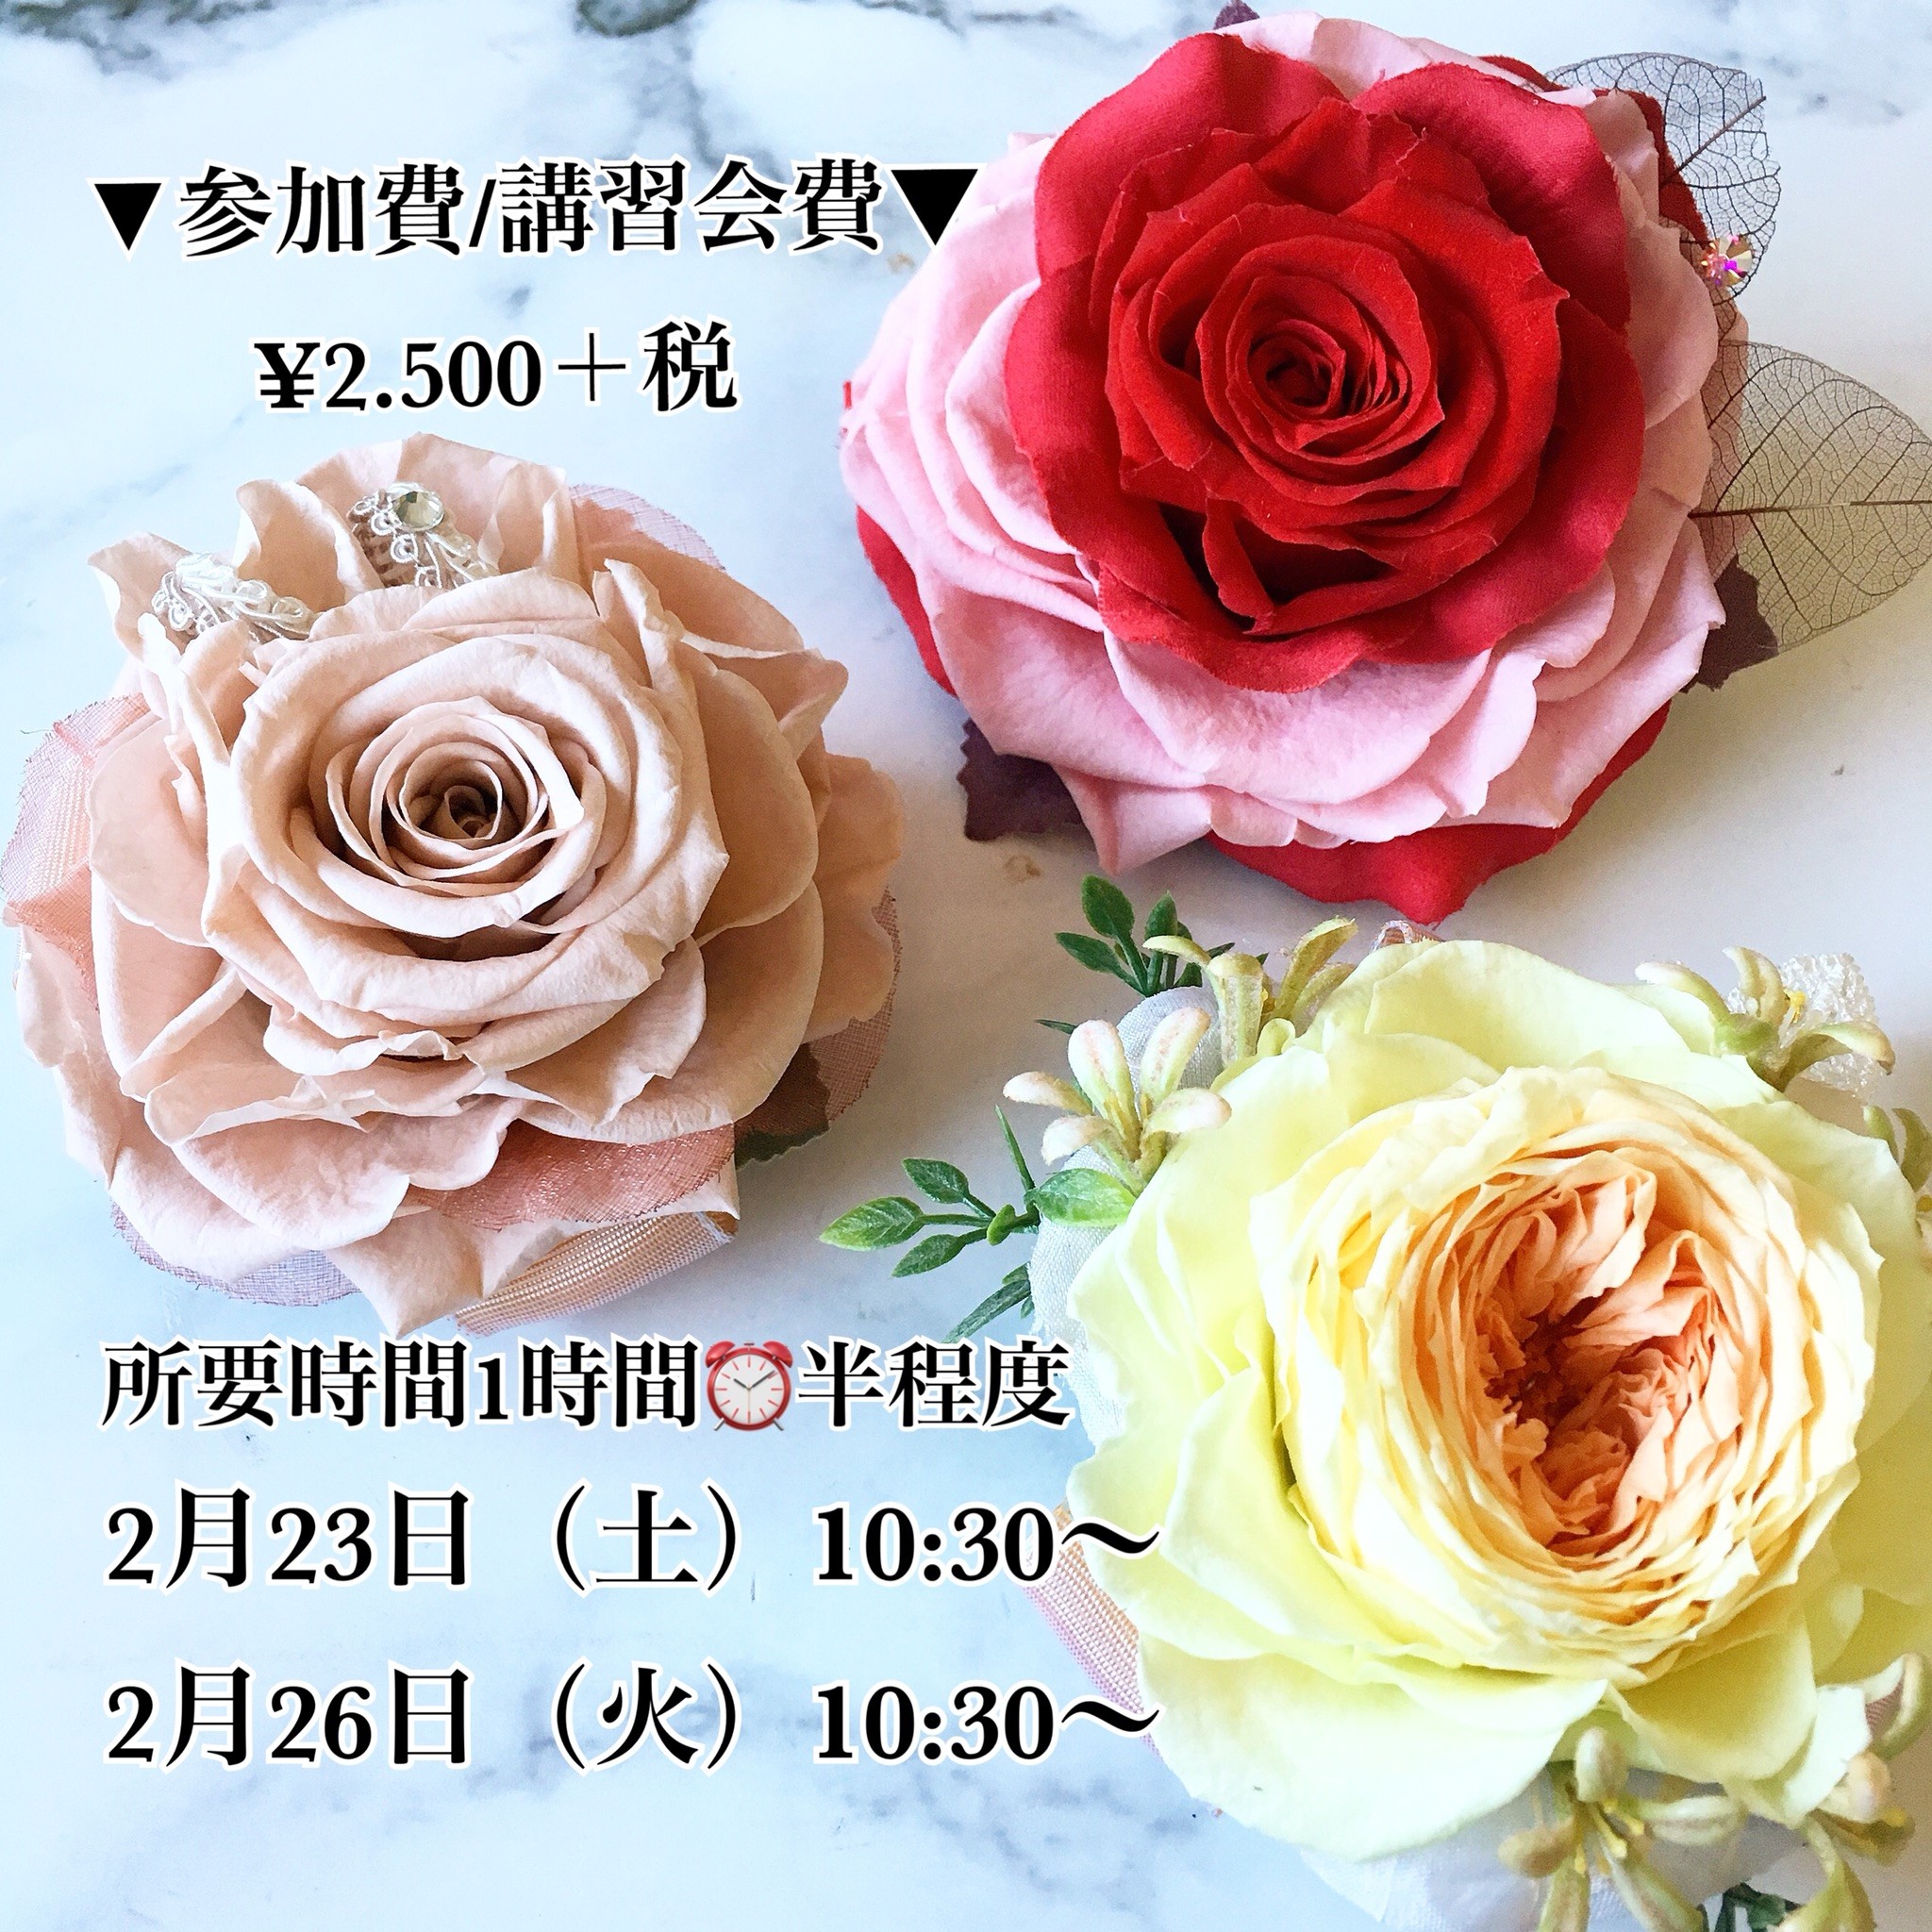 お知らせ 新着情報 花と緑と雑貨のお店 アトリエ花子 栃木県佐野市のお花屋さん